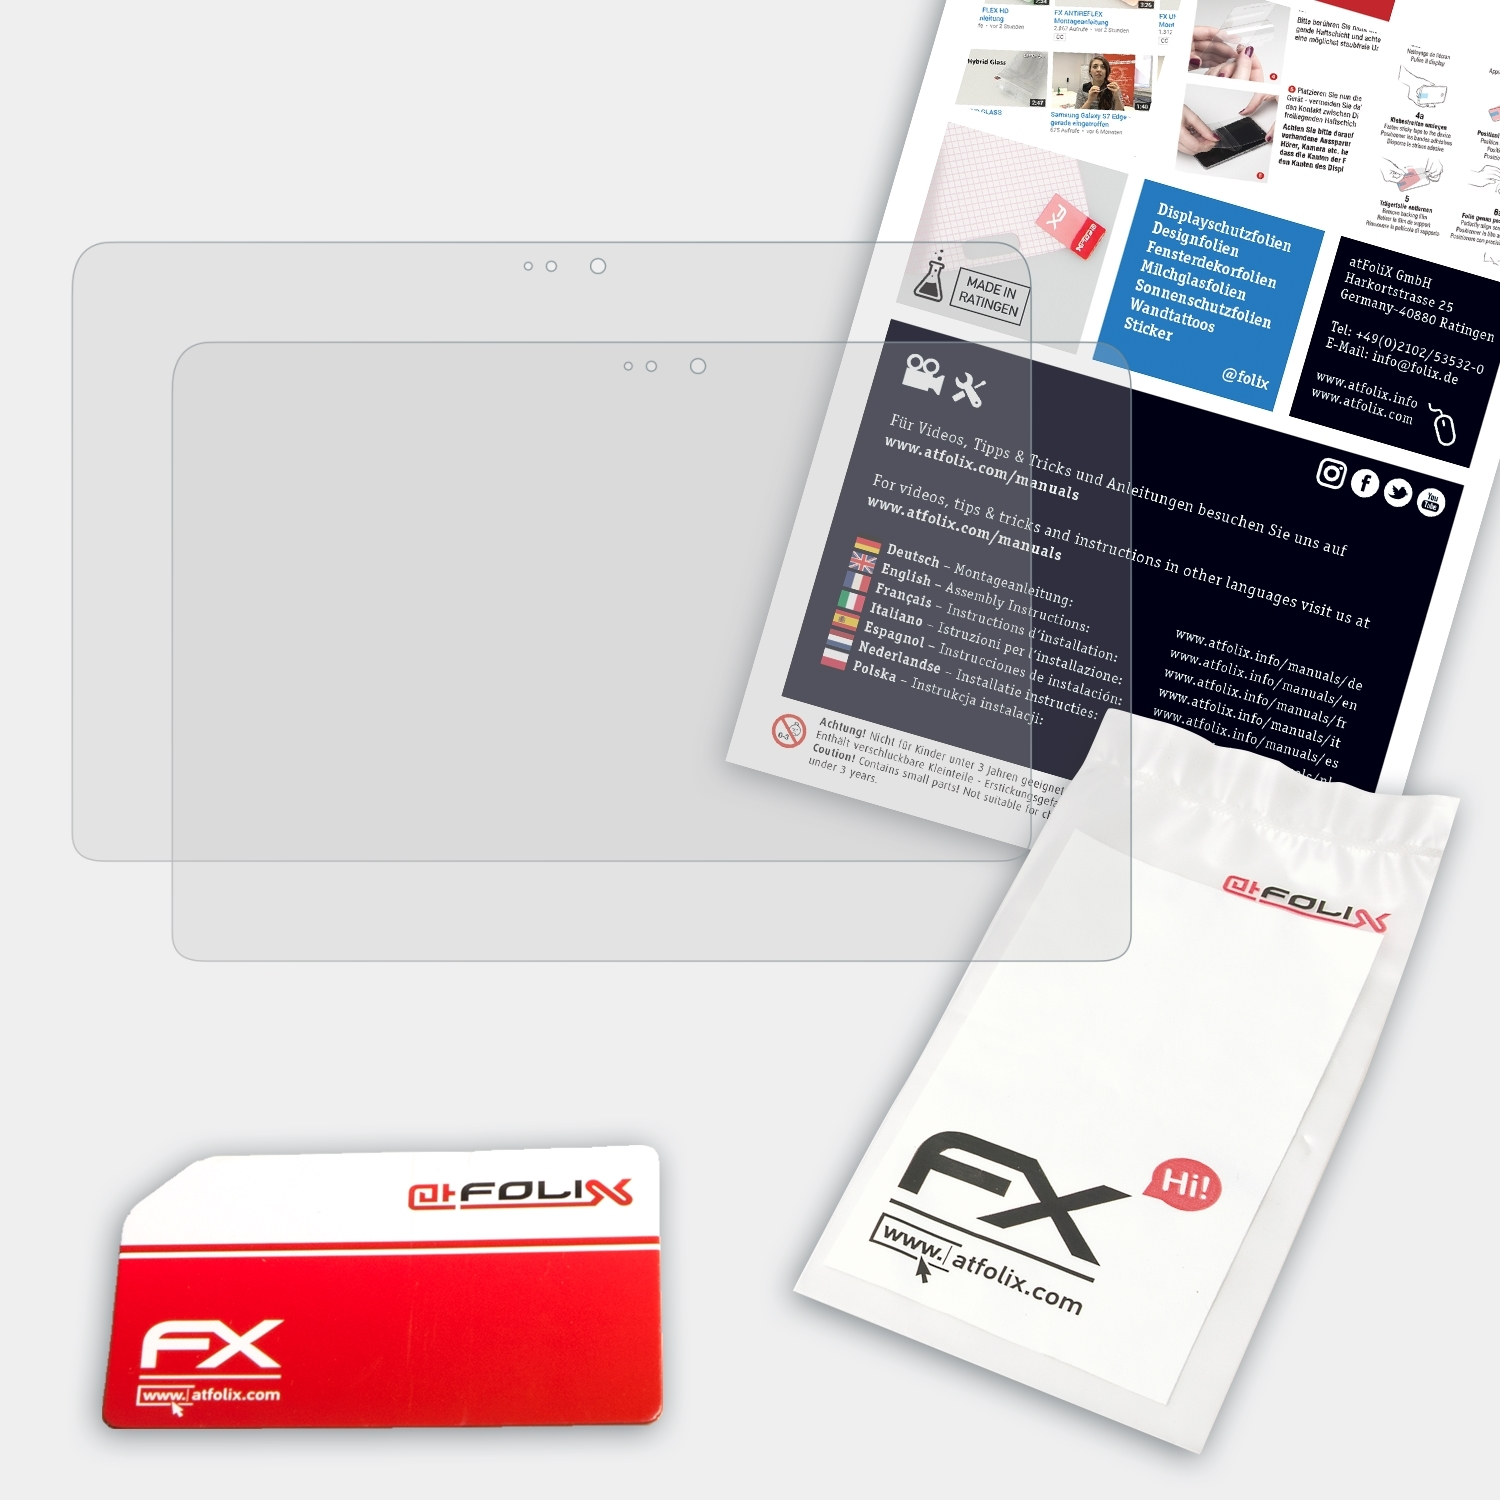 ATFOLIX 2x FX-Antireflex (UX360UA)) Displayschutz(für Flip Asus ZenBook